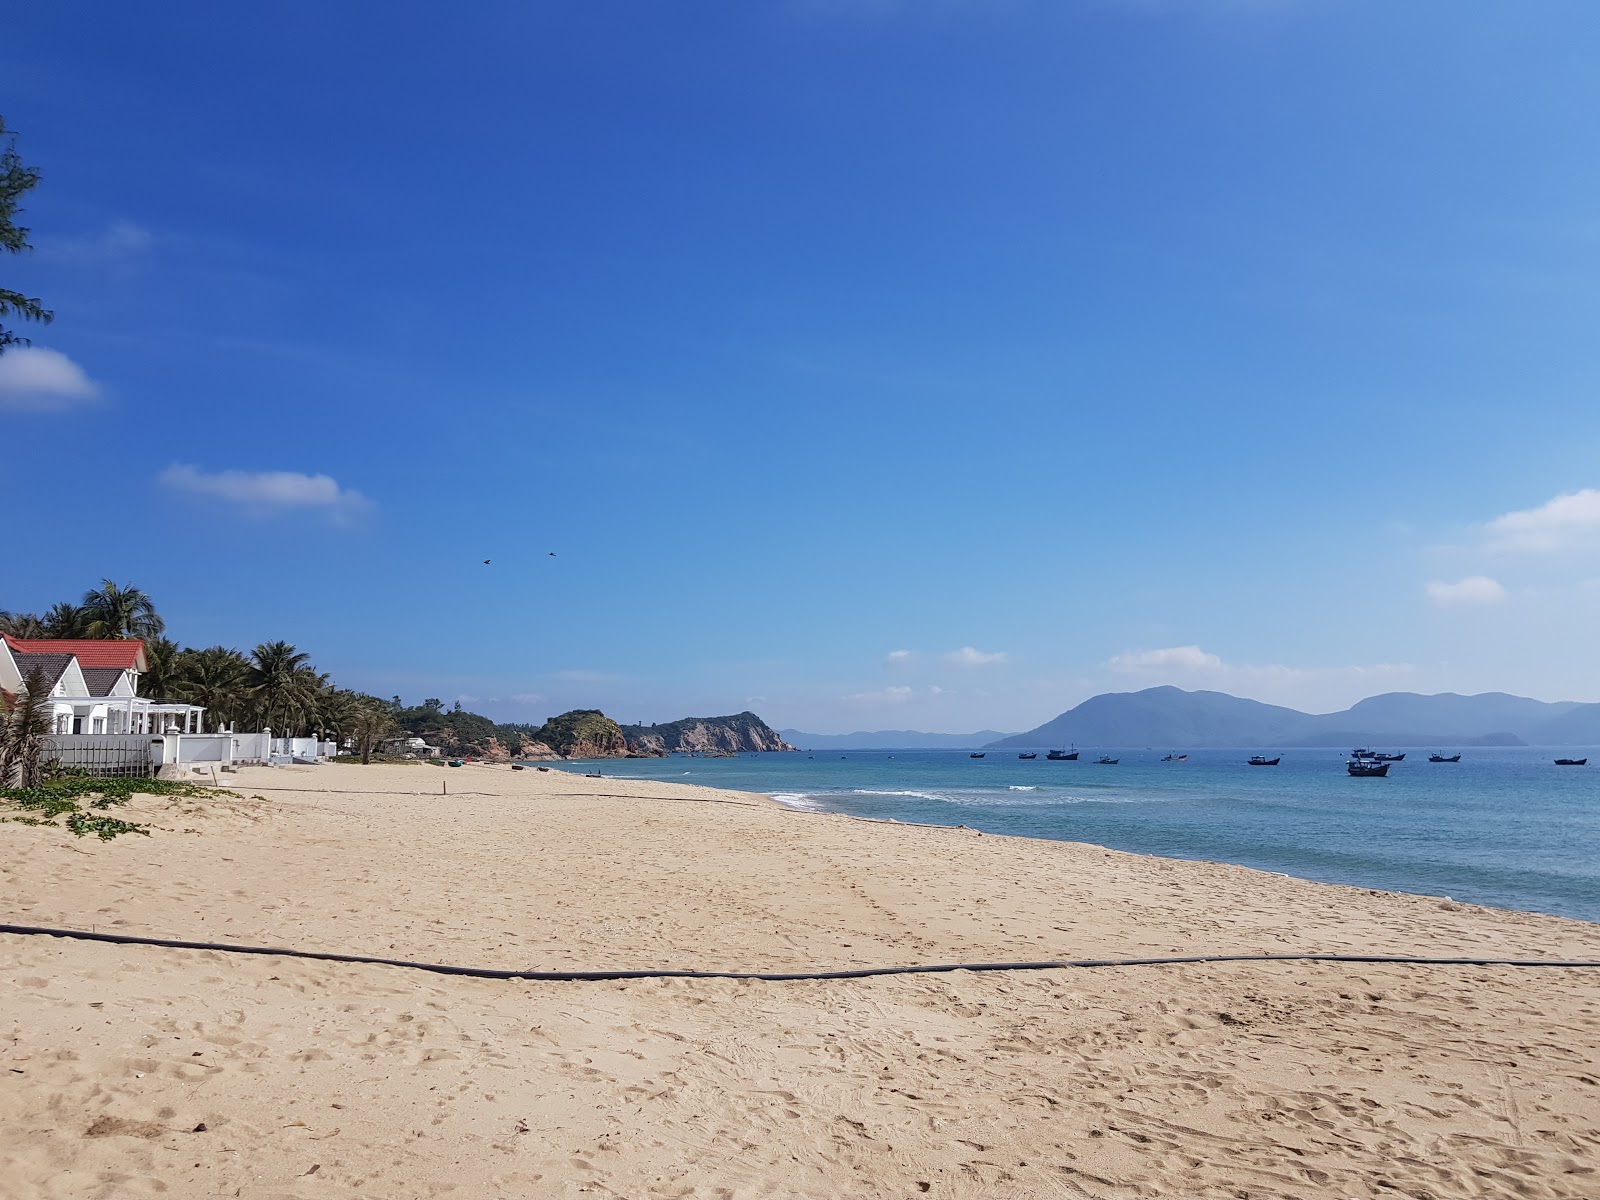 Ganh Do Beach'in fotoğrafı parlak kum yüzey ile